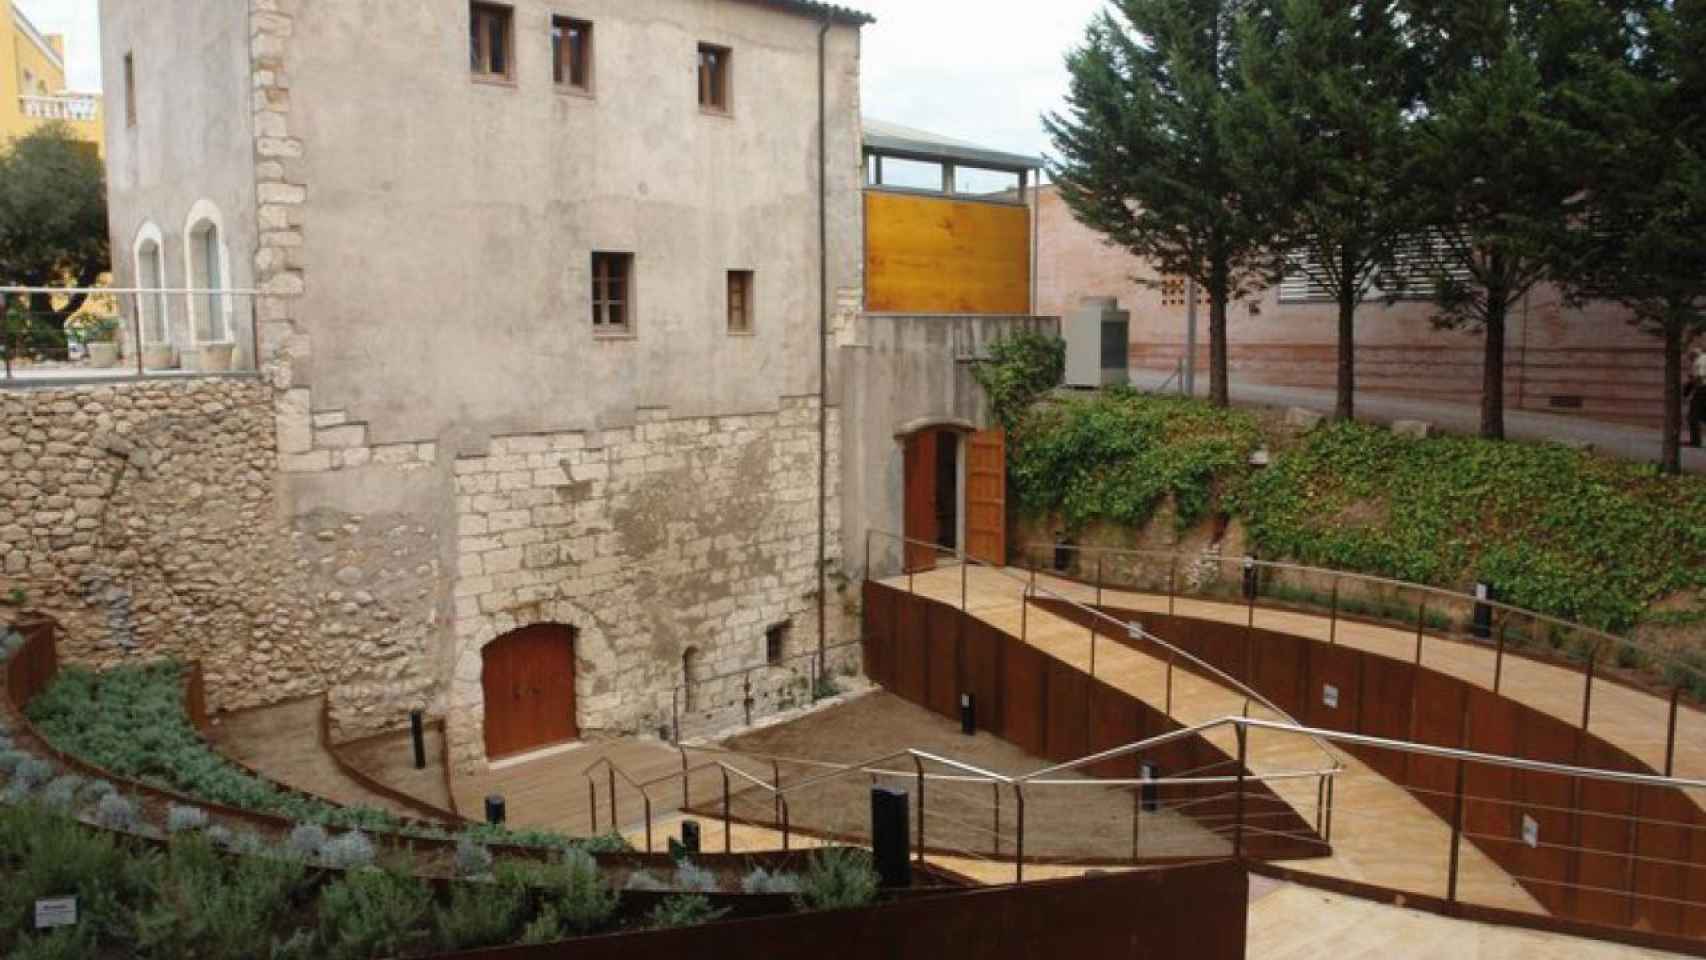 El Molí del Foix - Centro de Interpretación Histórica y Natural